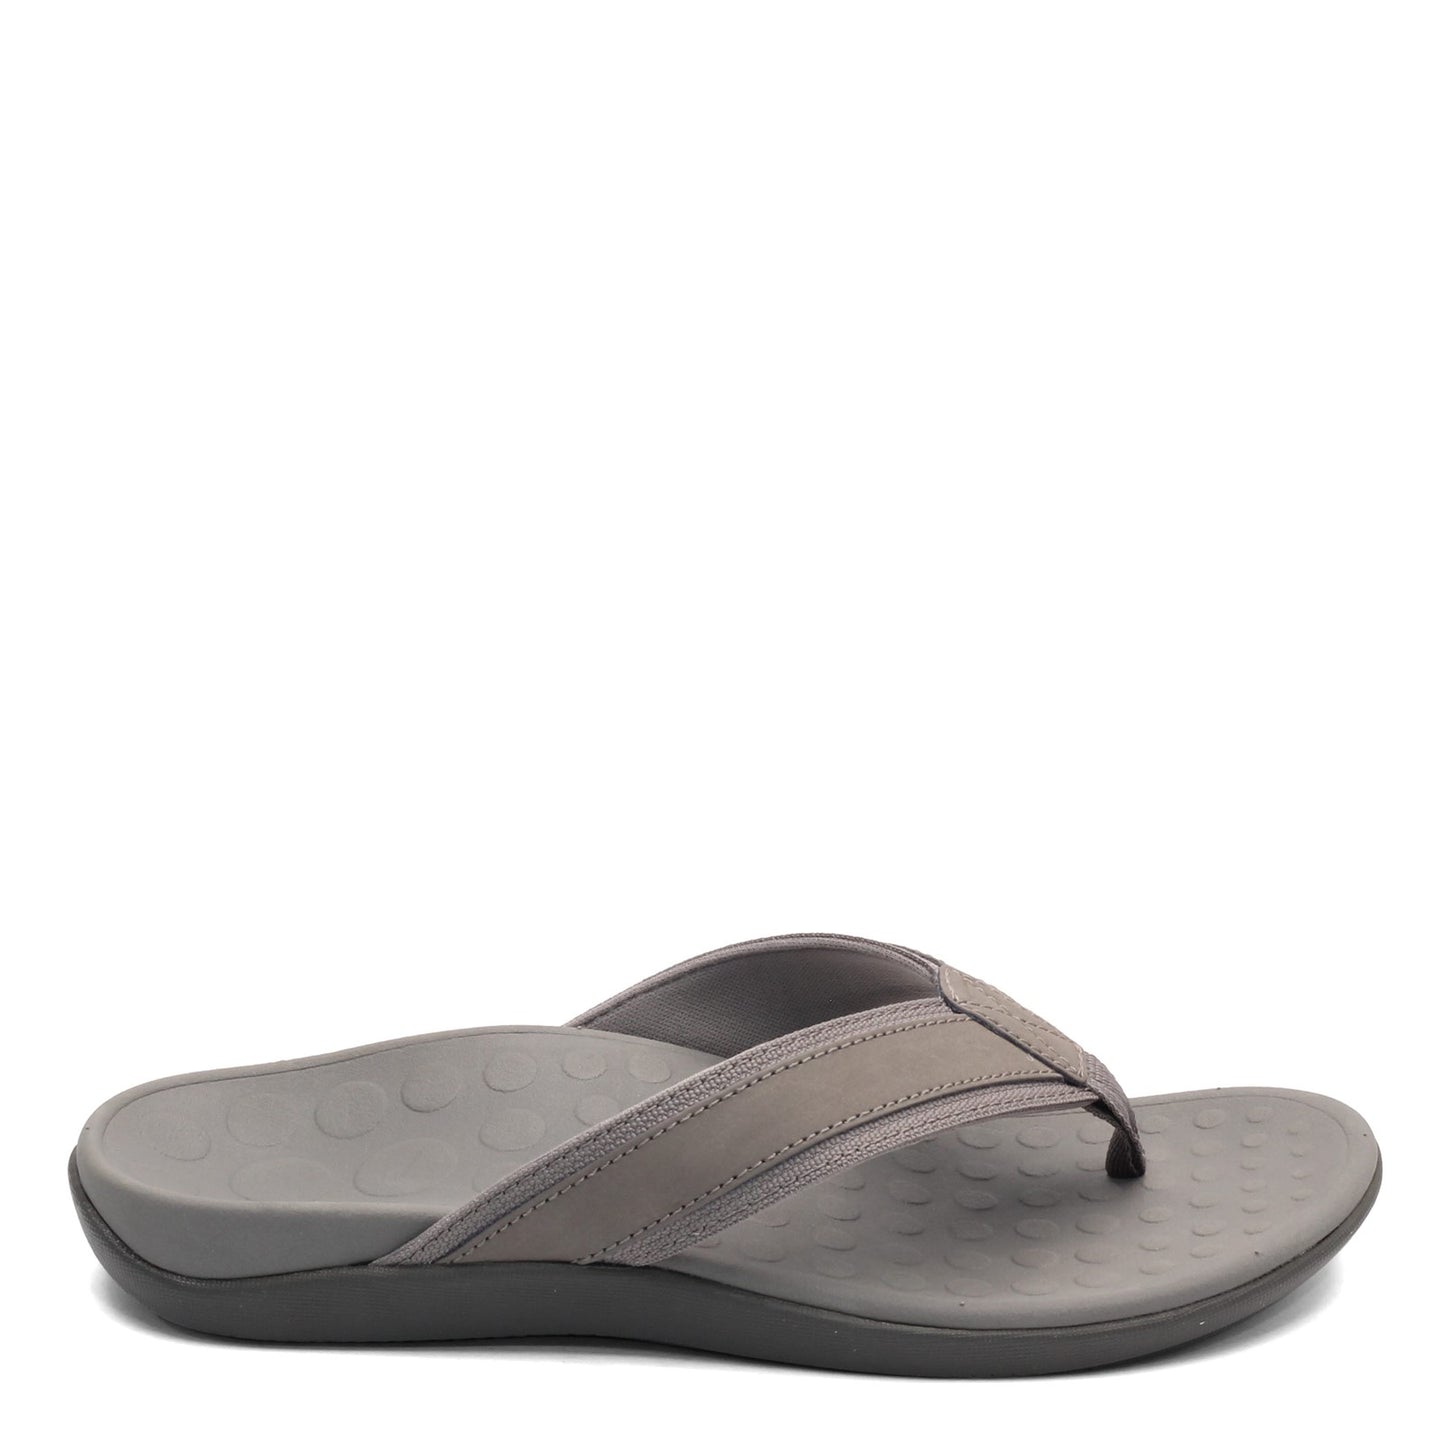 Peltz Shoes  Men's Vionic Tide Sandal CHARCOAL 10000541-CHRCL